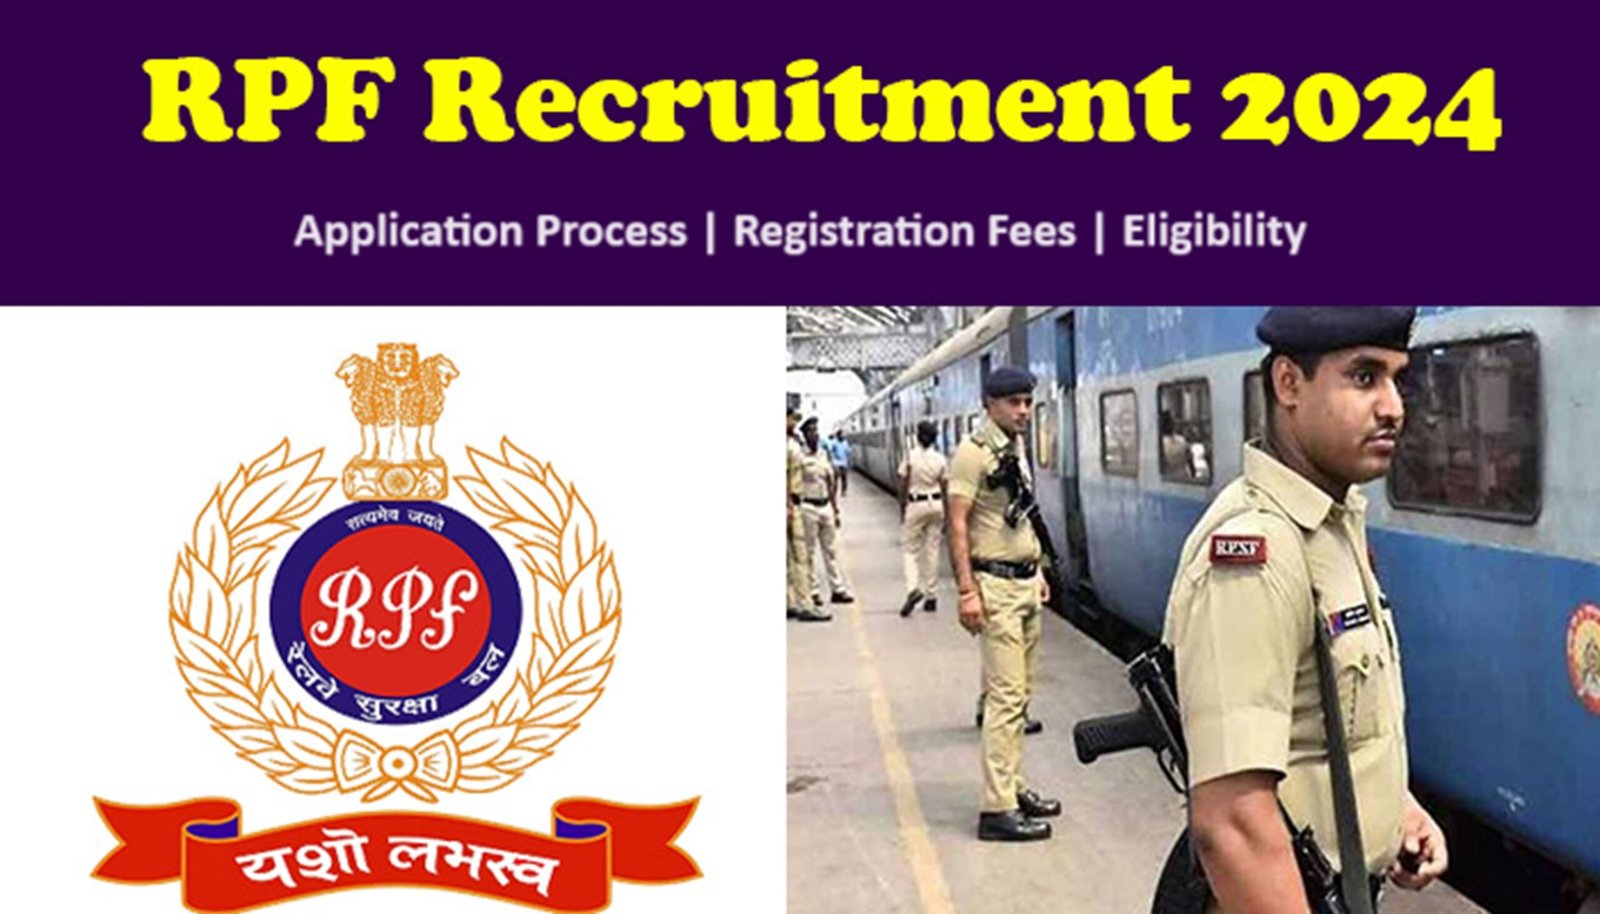 RPF Recruitment 2024 - रेलवे पुलिस फोर्स में निकली बंपर भर्ती, जानिए डिटेल्स